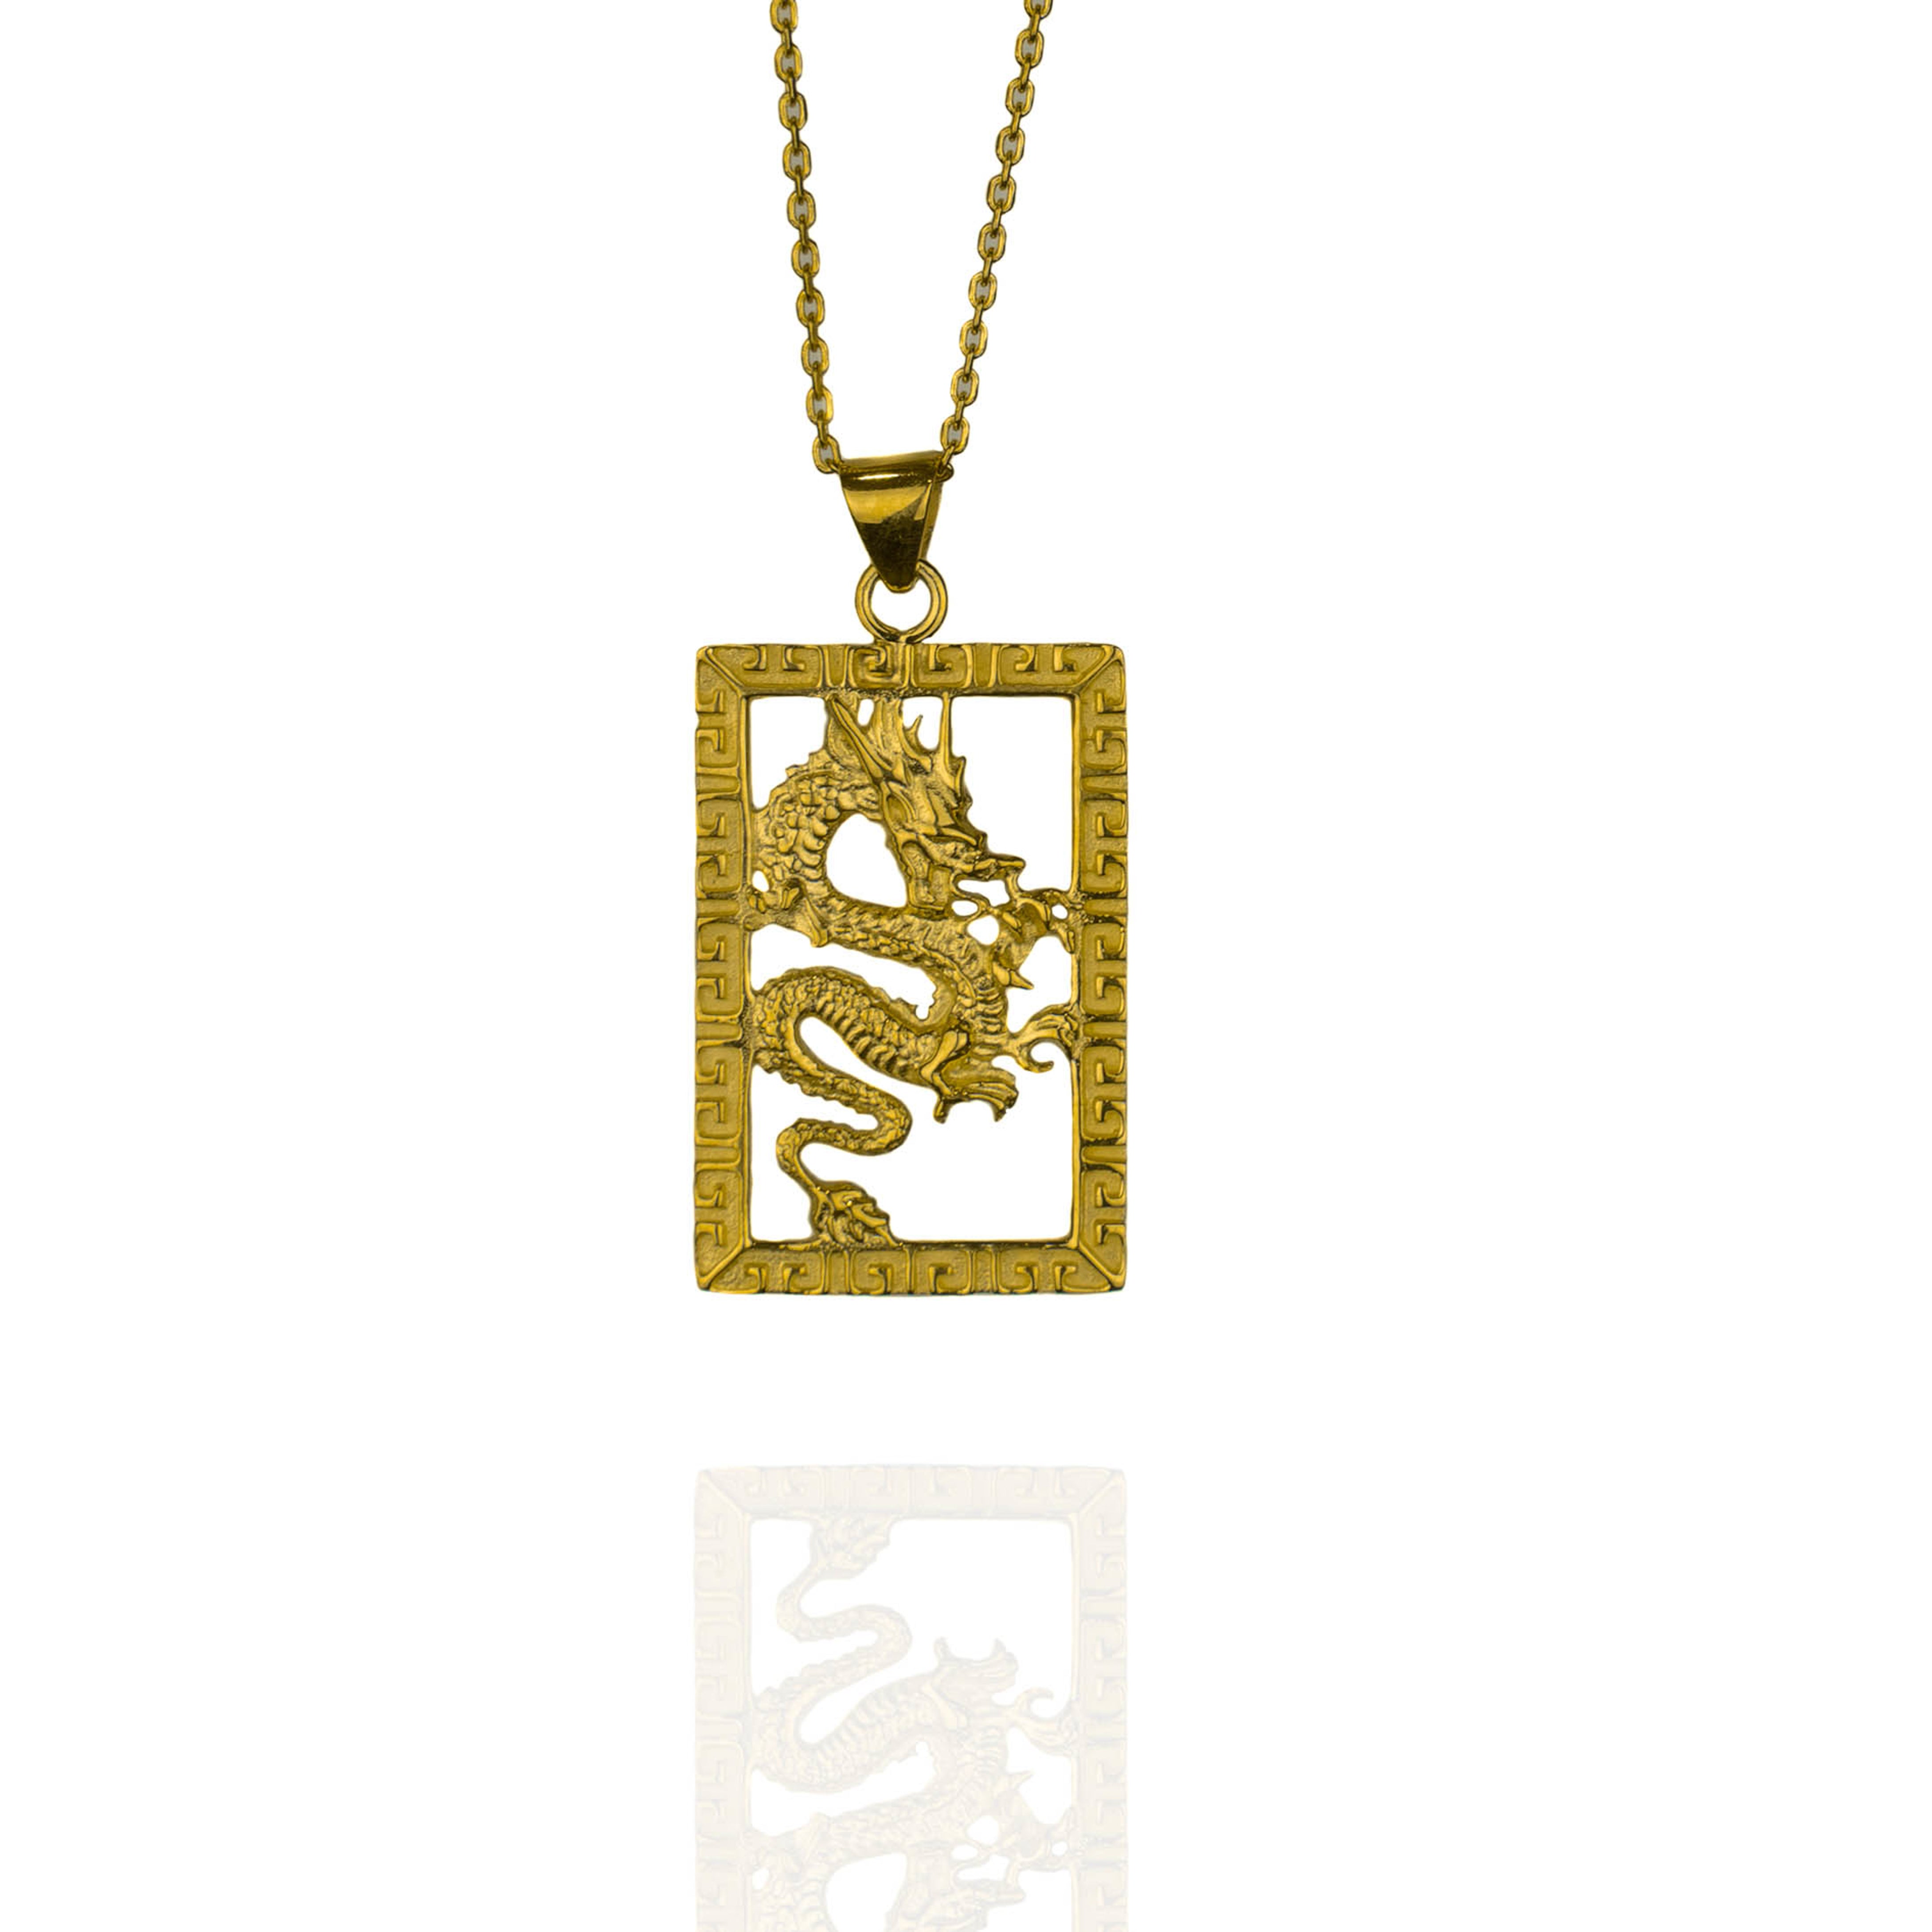 Gold dragon inside frame necklace